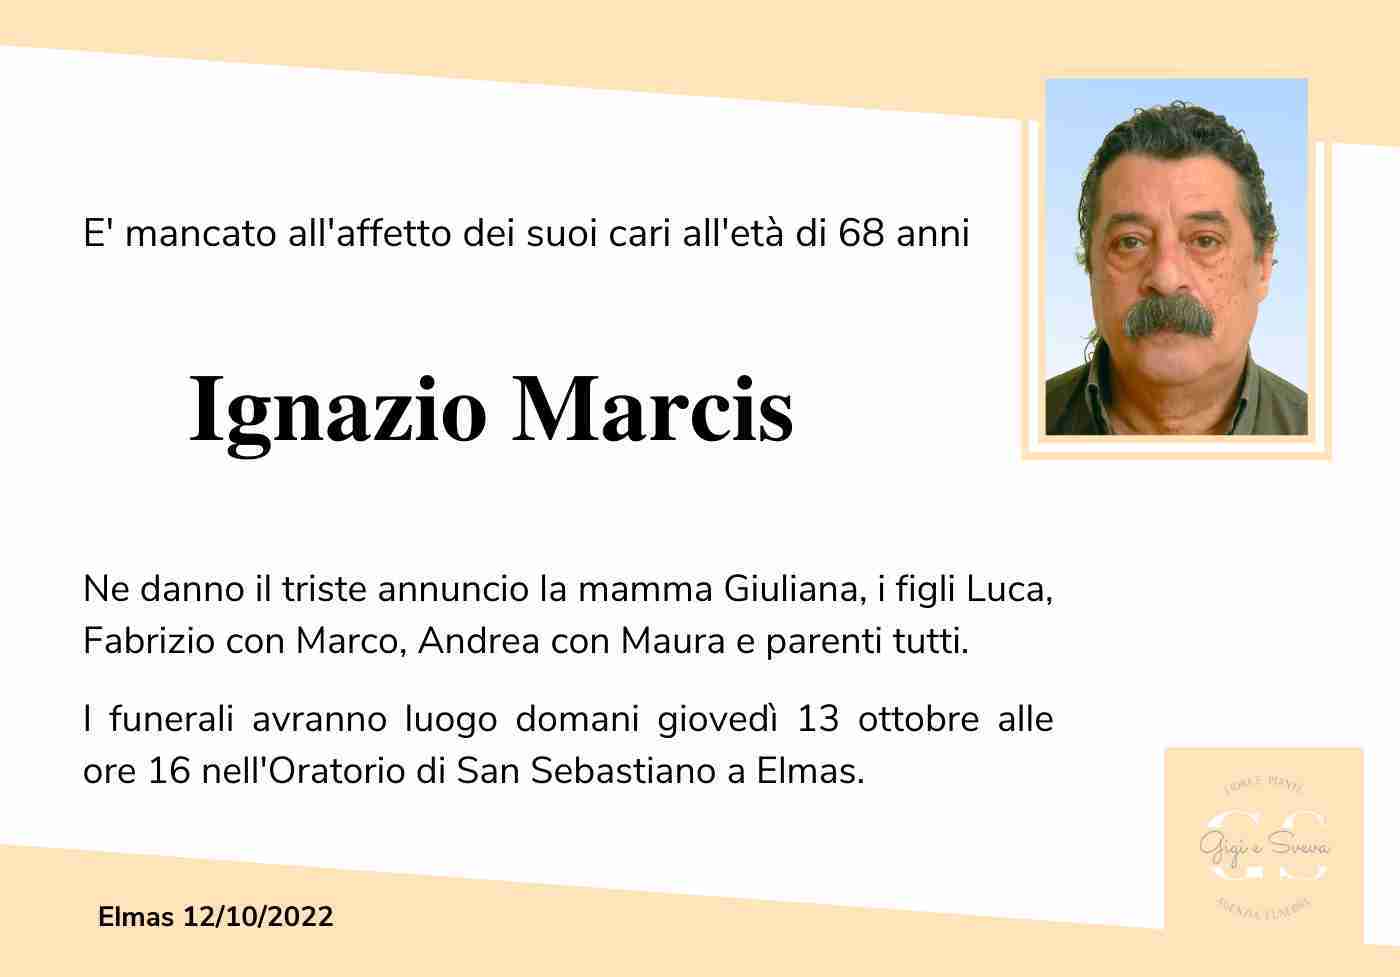 Ignazio Marcis